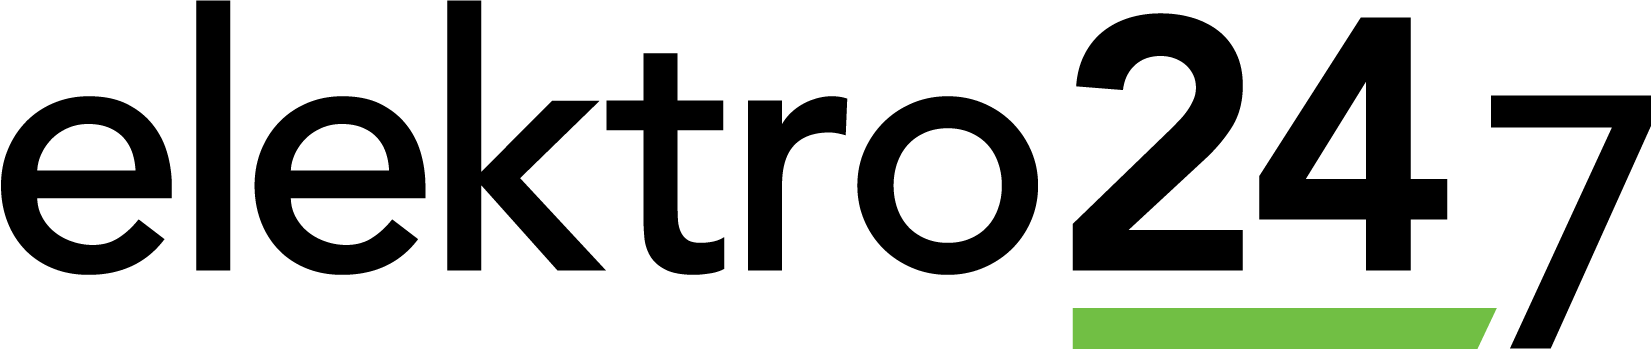 VVSForum logo